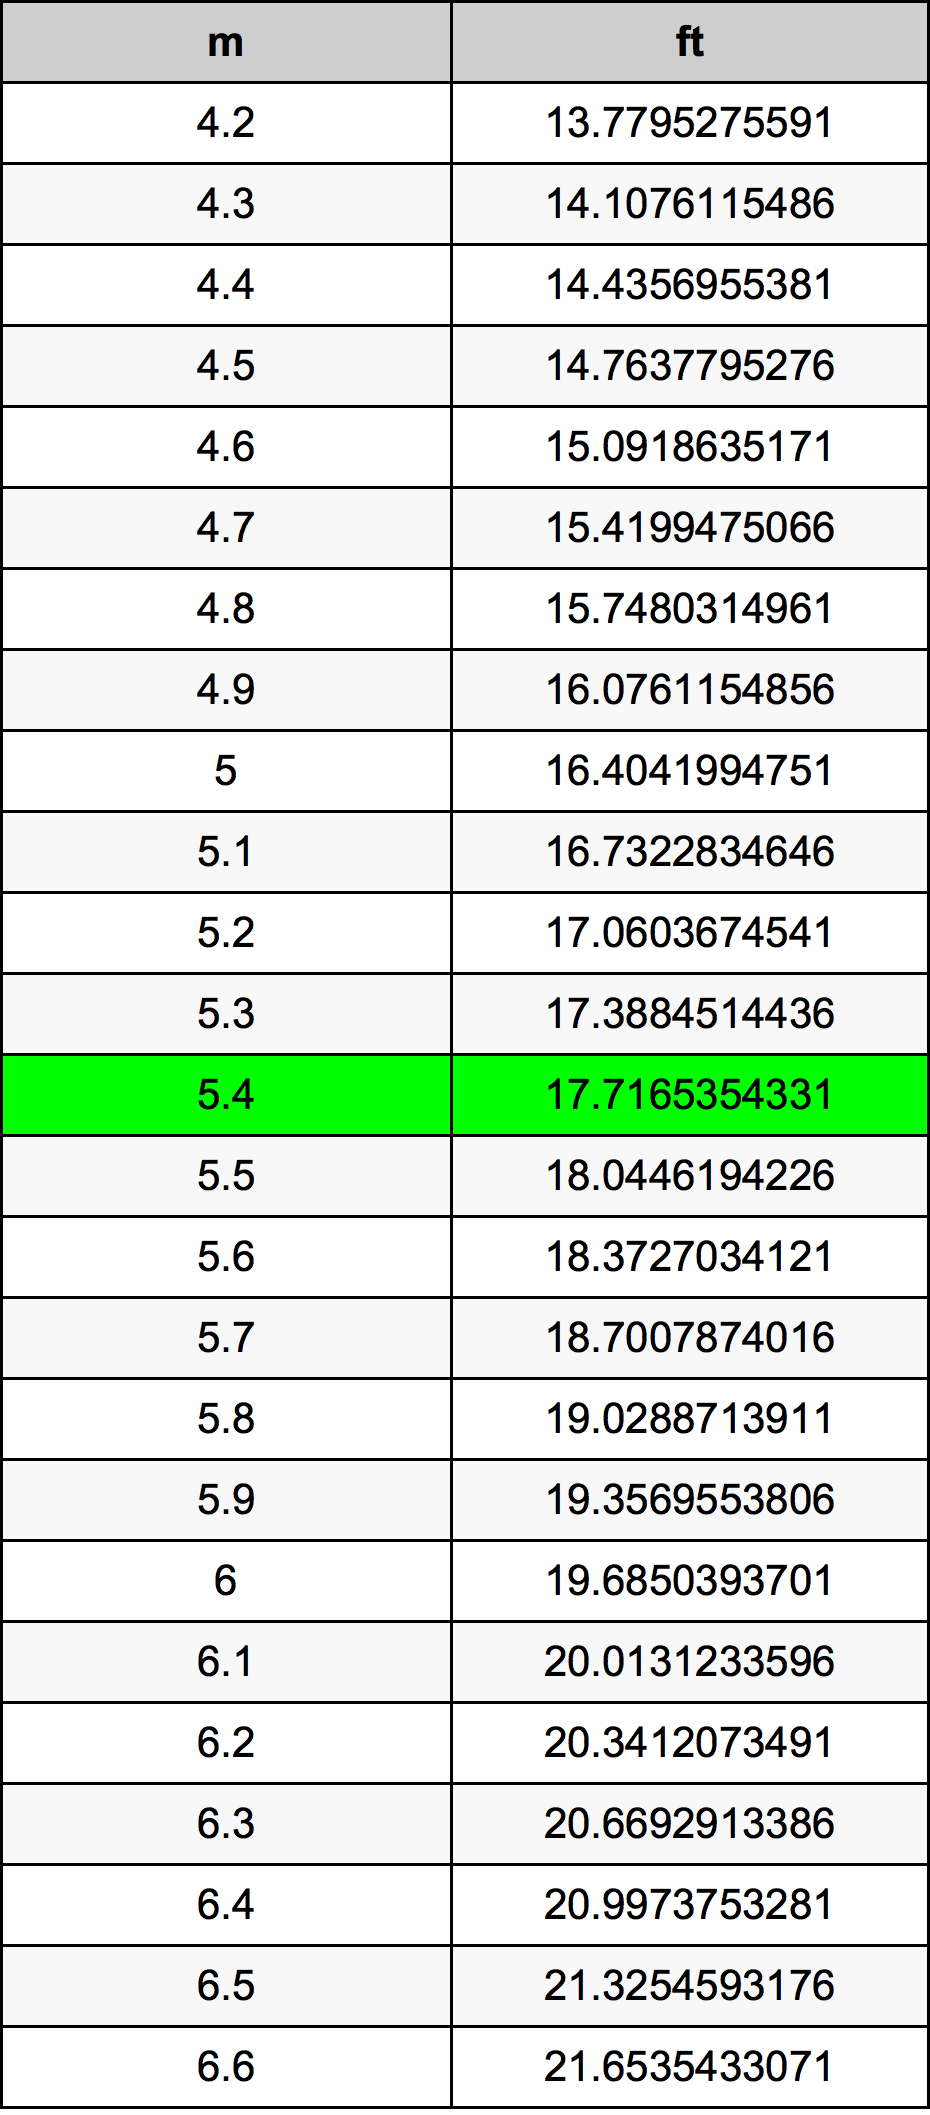 5.4 Metru tabelul de conversie